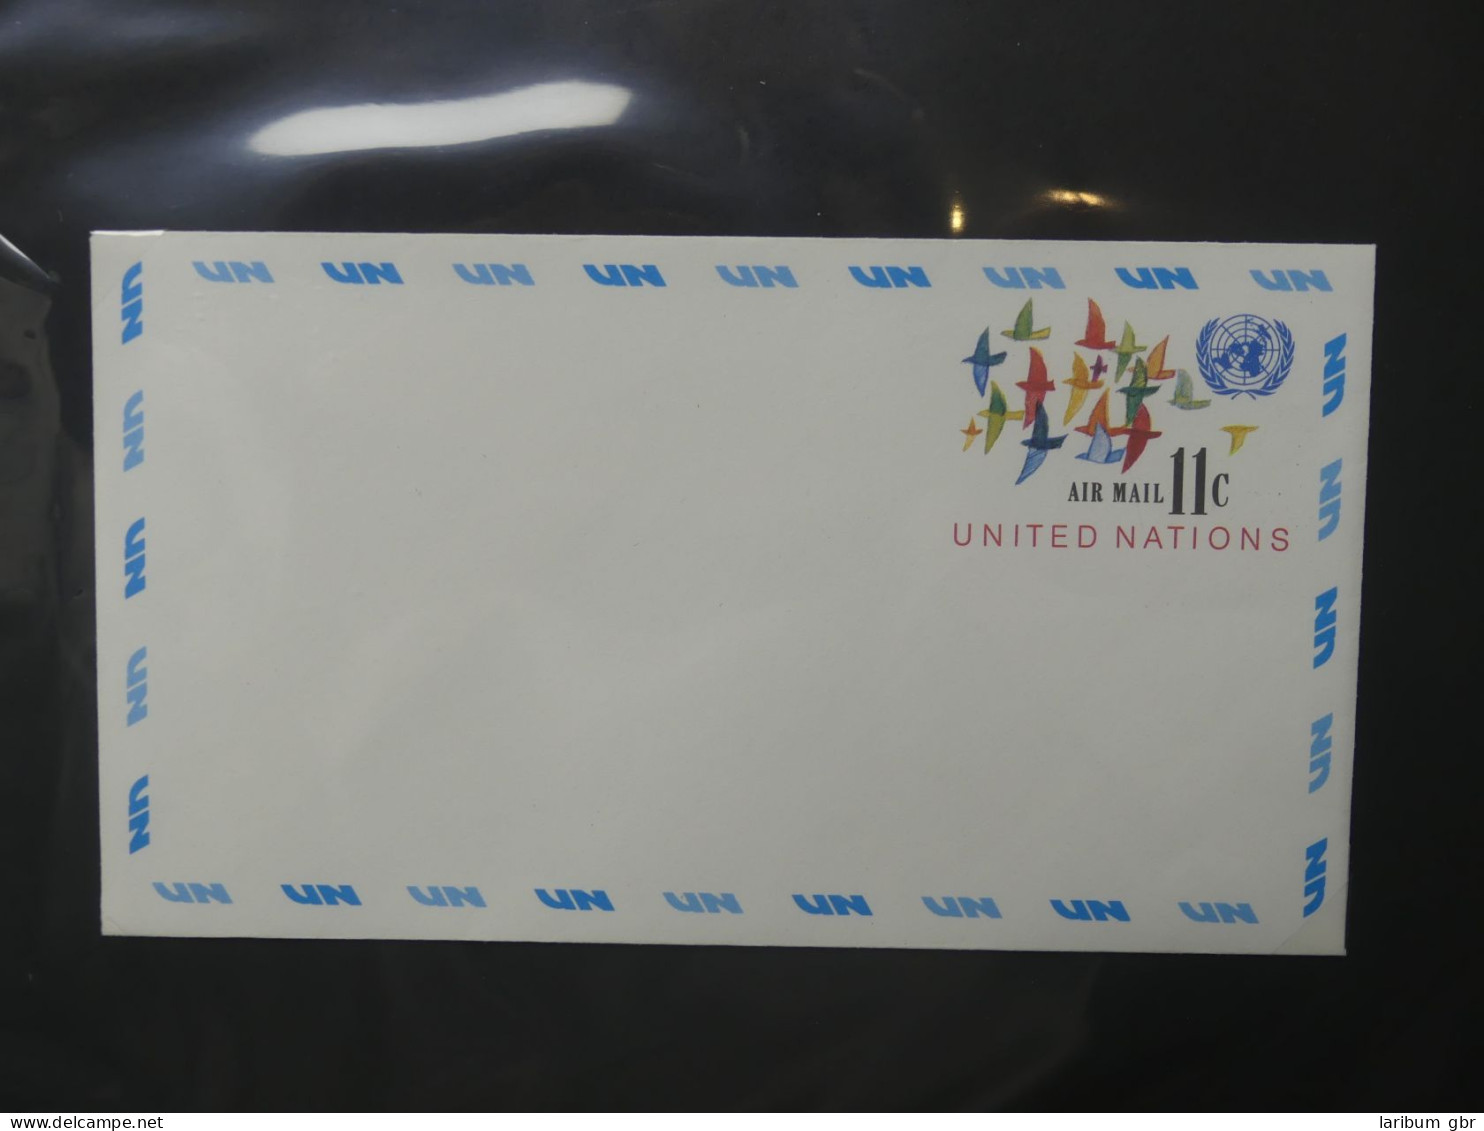 Vereinte Nationen New York Ganzsachen besammelt im Ring Binder #LY666